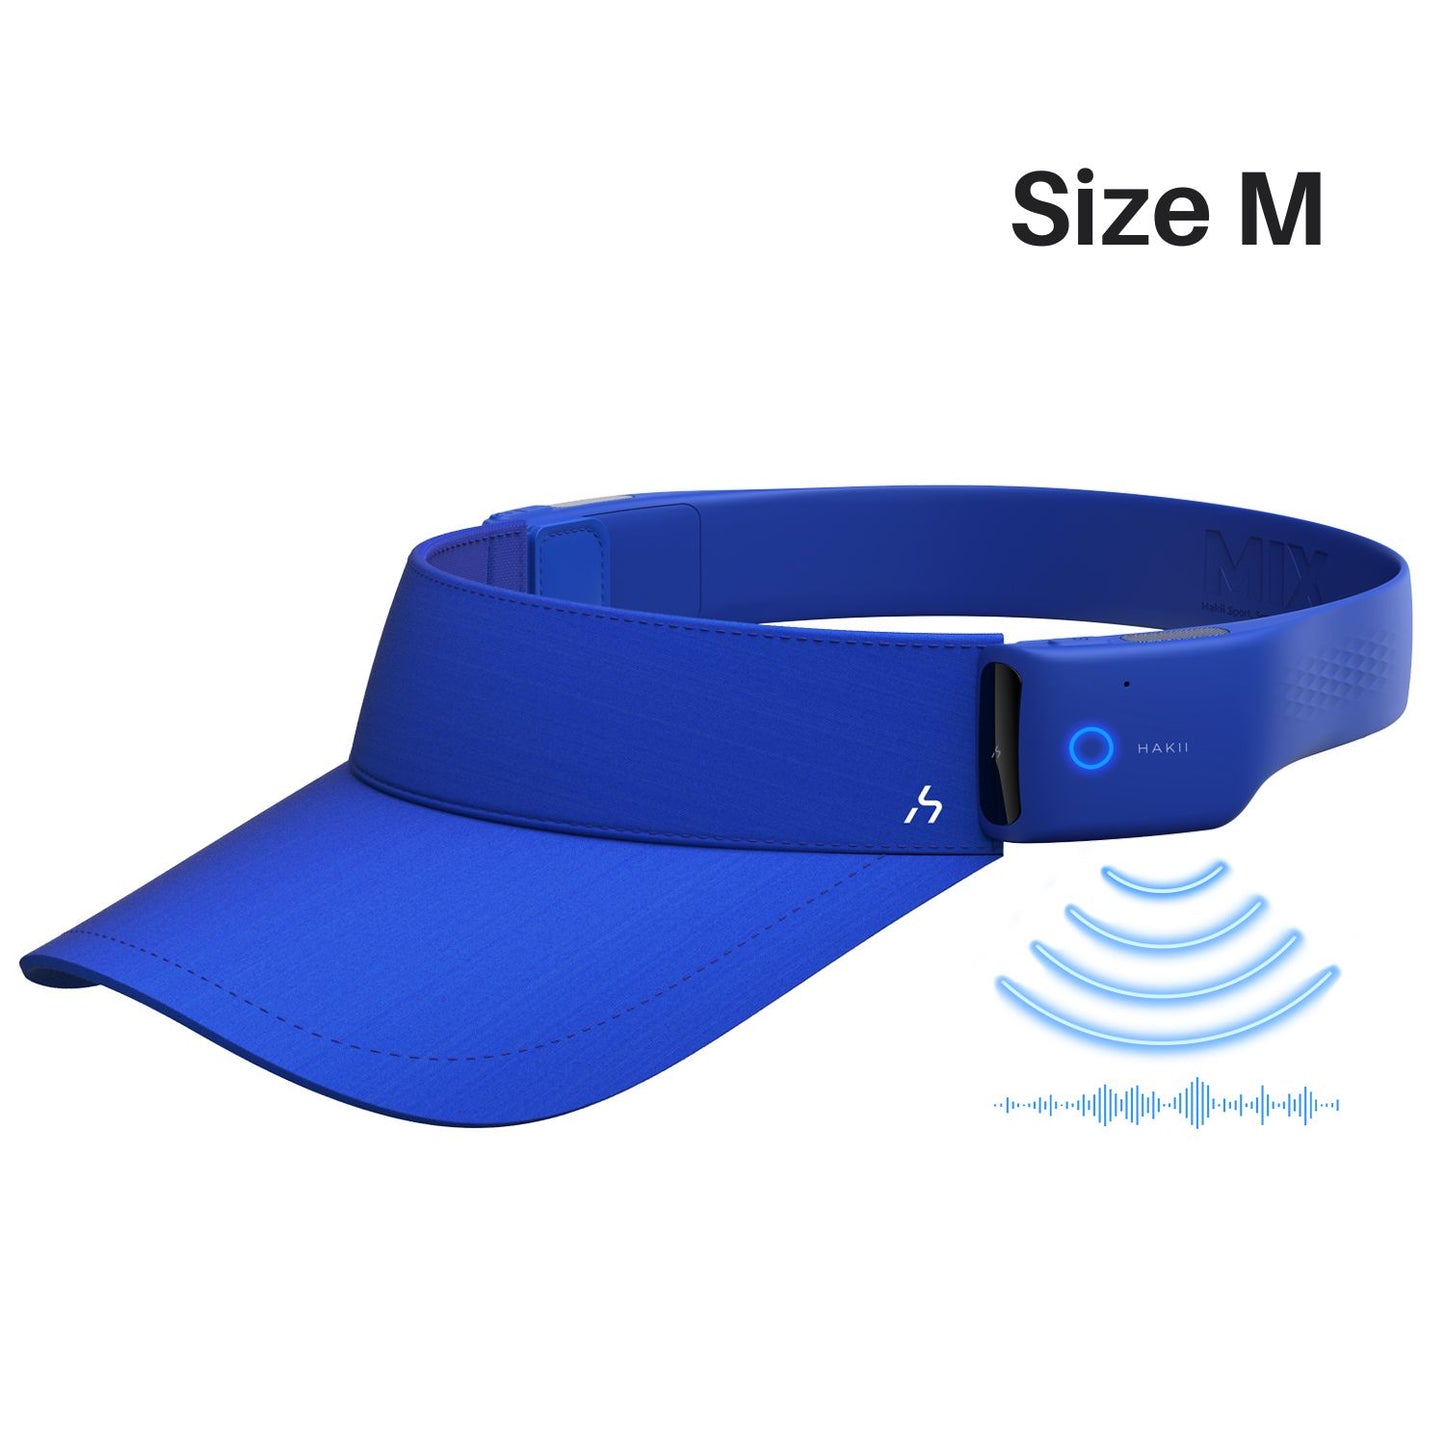 HAKII MIXV Auriculares Inteligentes con Visera Bluetooth (Azul)